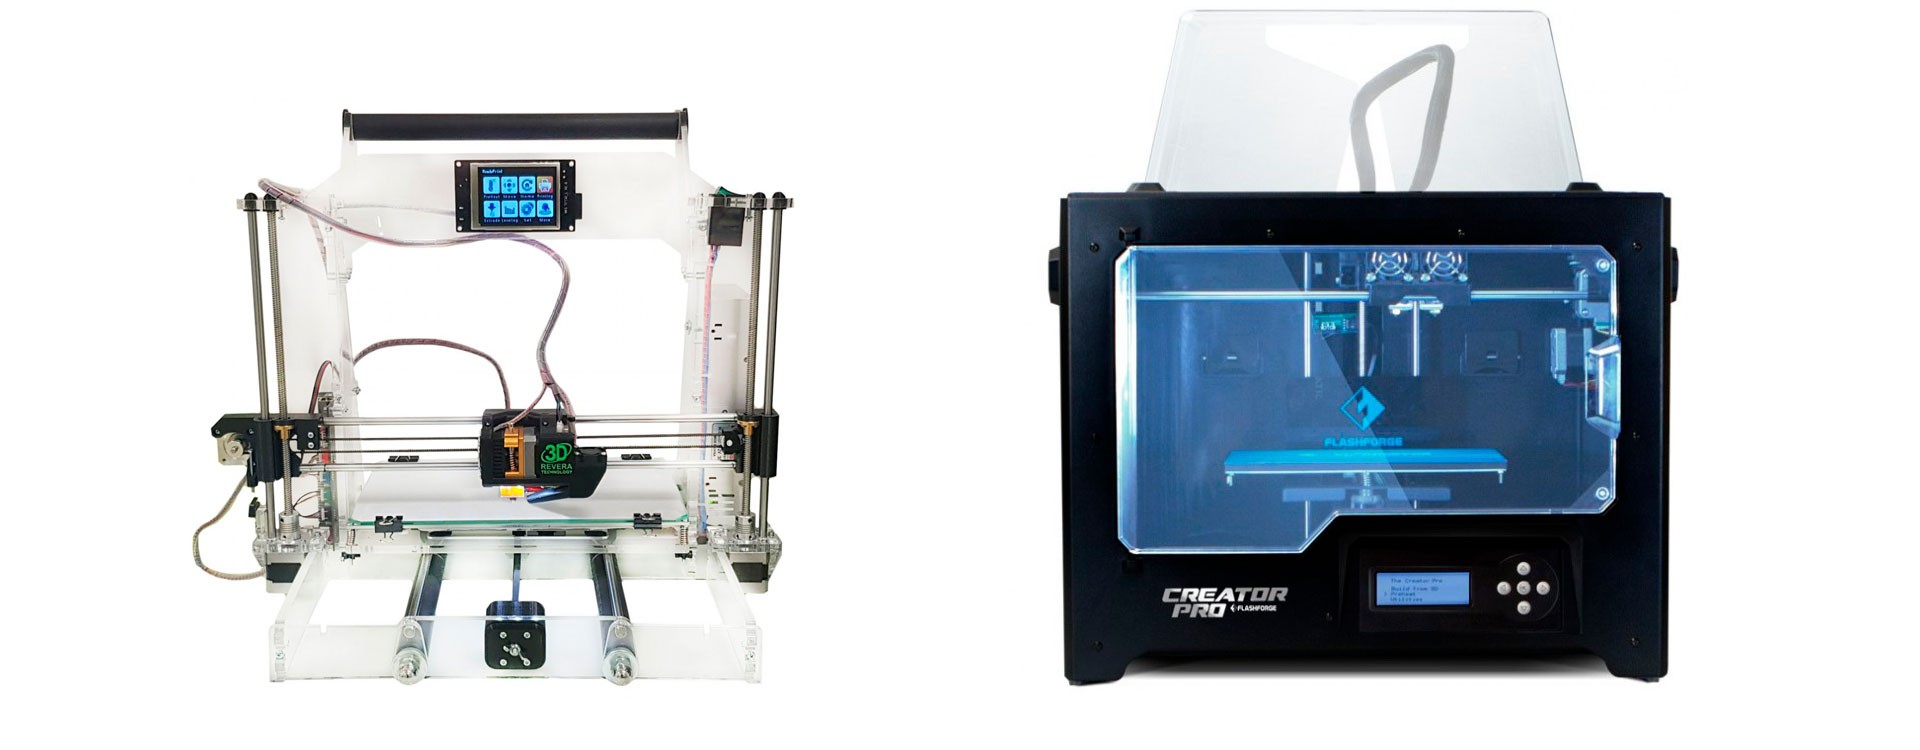 Как выбрать 3D-принтер для дома и бизнеса?